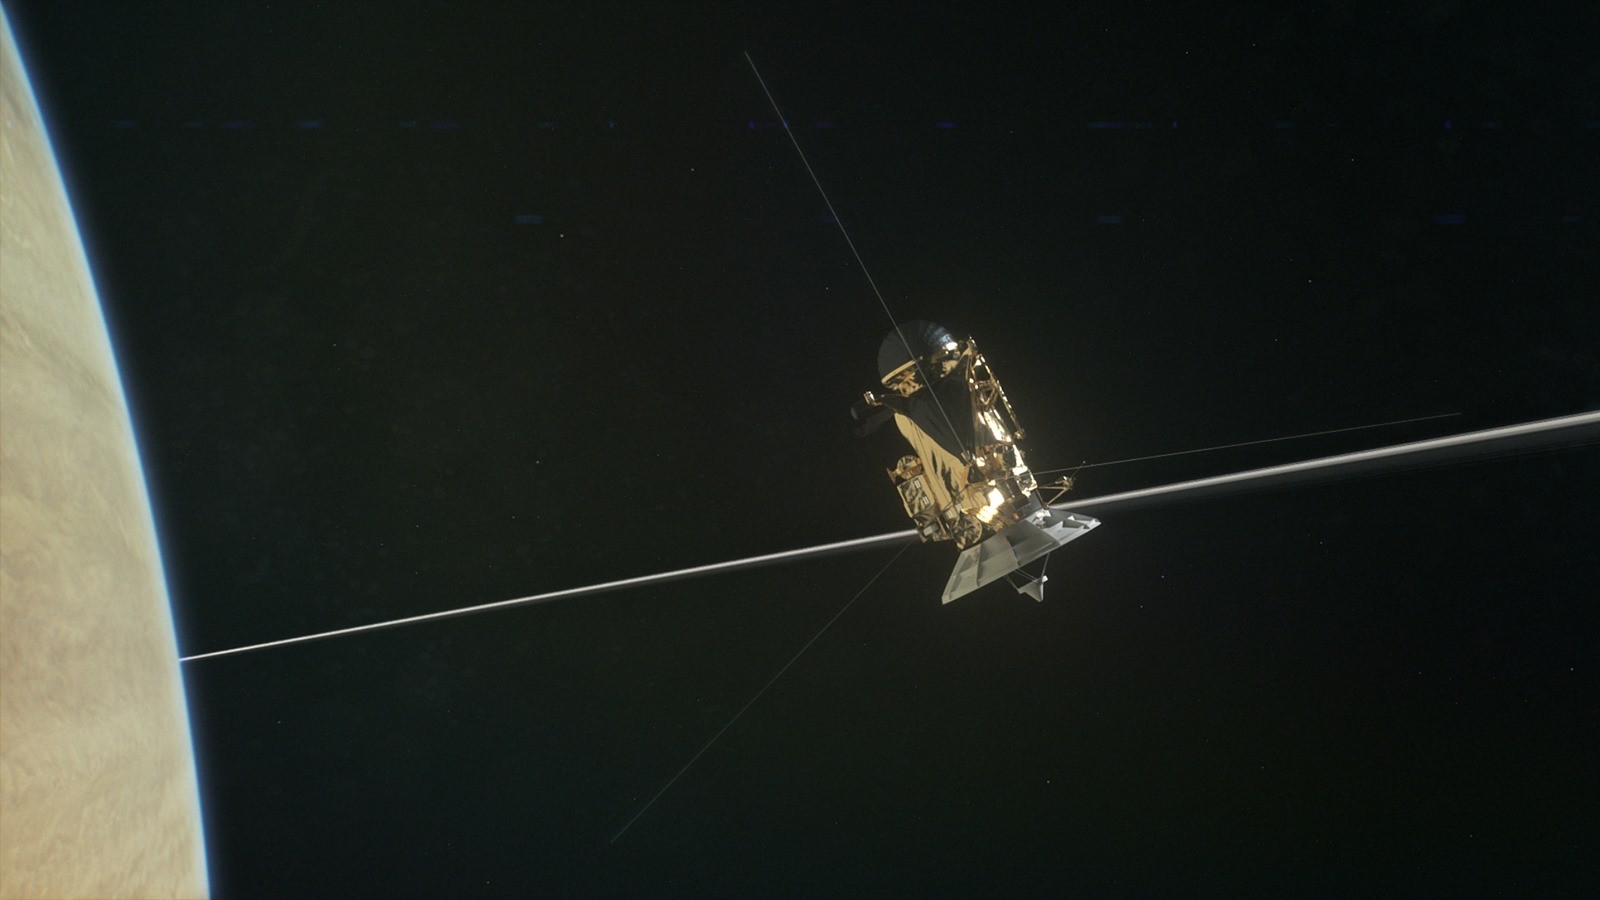 La sonde Cassini n’a pas entendu grand-chose en passant entre Saturne et ses anneaux et c’est plutôt bon signe